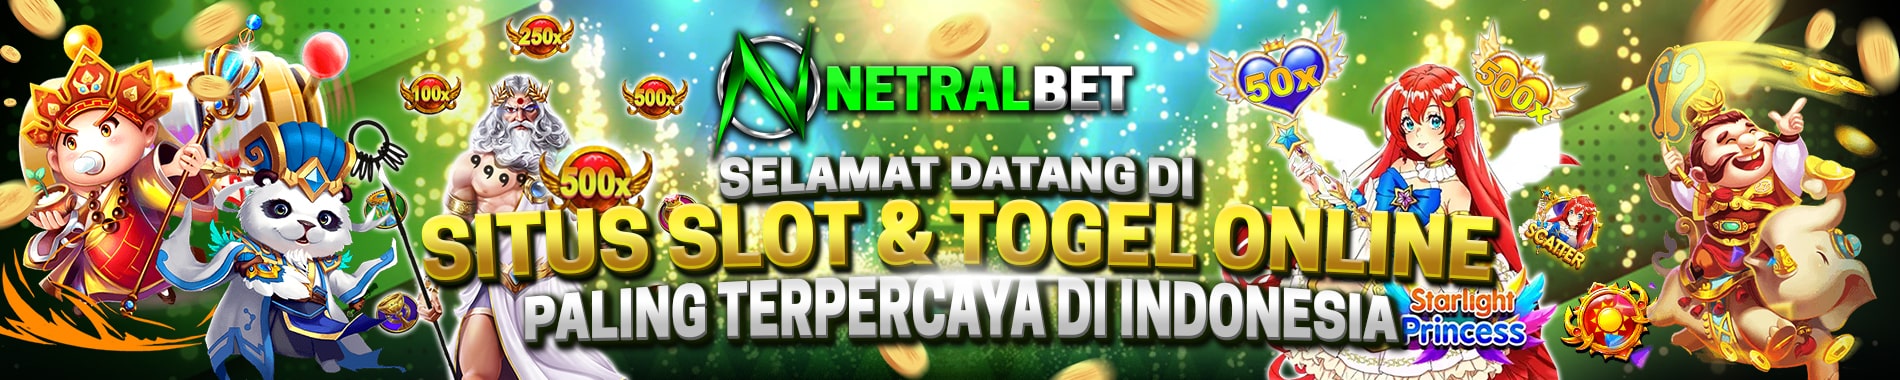 NETRALBET Situs Judi Slot Online 24 Jam Terbaik No 1 Di Indonesia